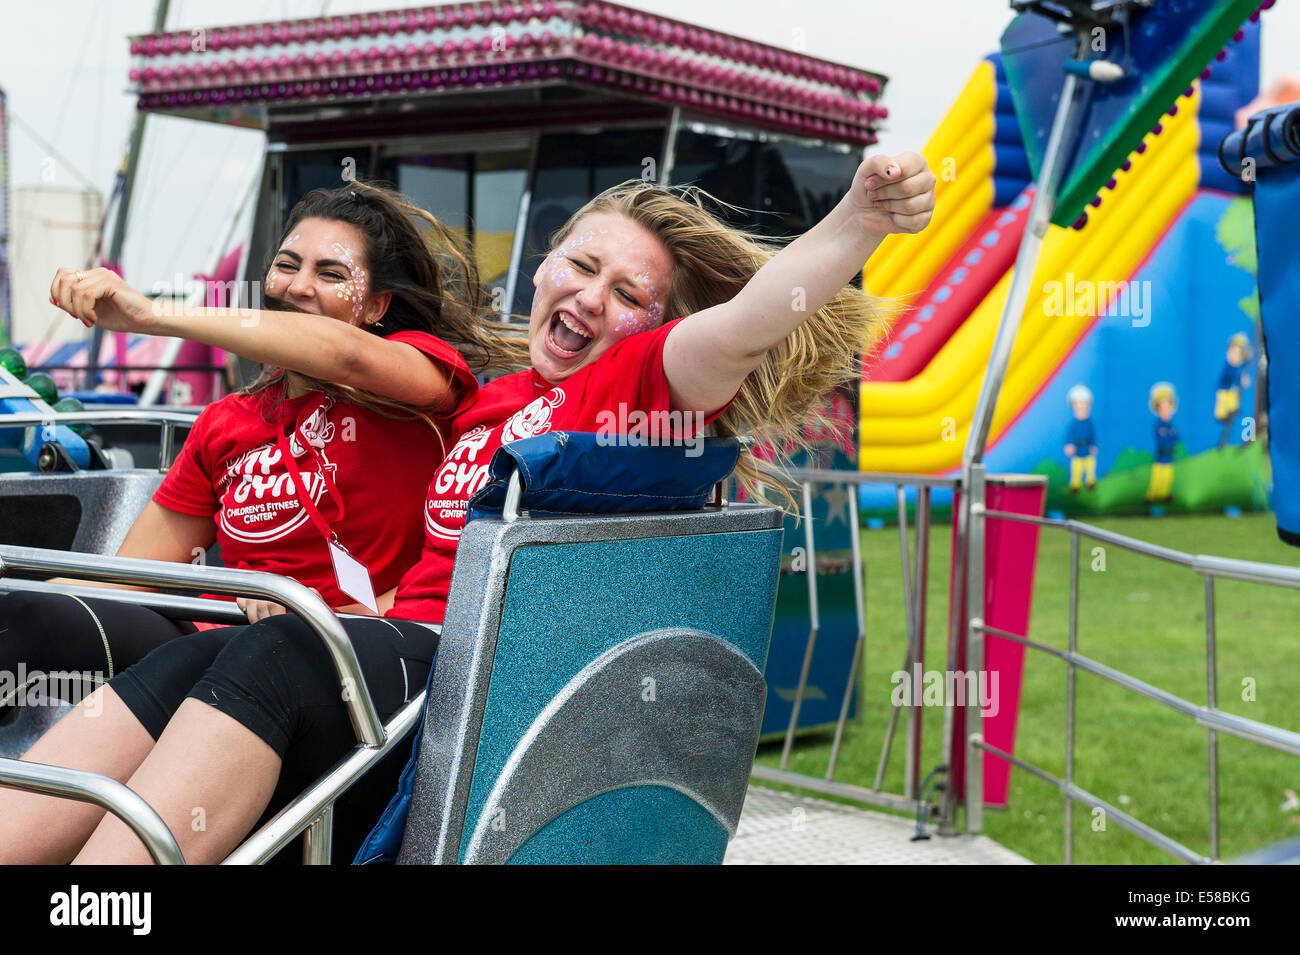 Zwei junge Mädchen genießen sich auf einem Festplatz beim Brentwood Festival in Essex. Stockfoto